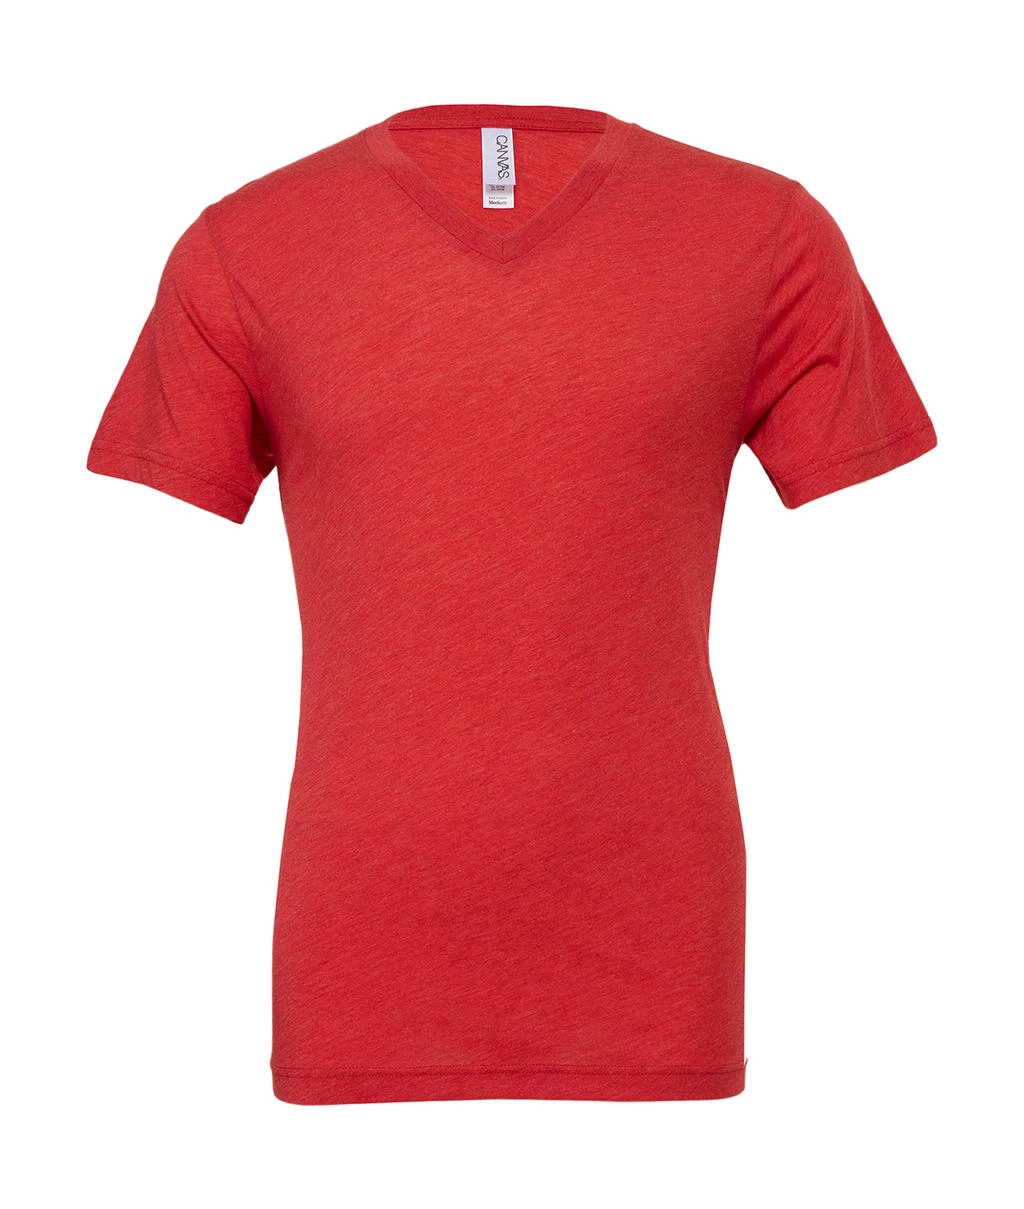 Unisex Triblend V-Neck T-Shirt zum Besticken und Bedrucken in der Farbe Red Triblend mit Ihren Logo, Schriftzug oder Motiv.